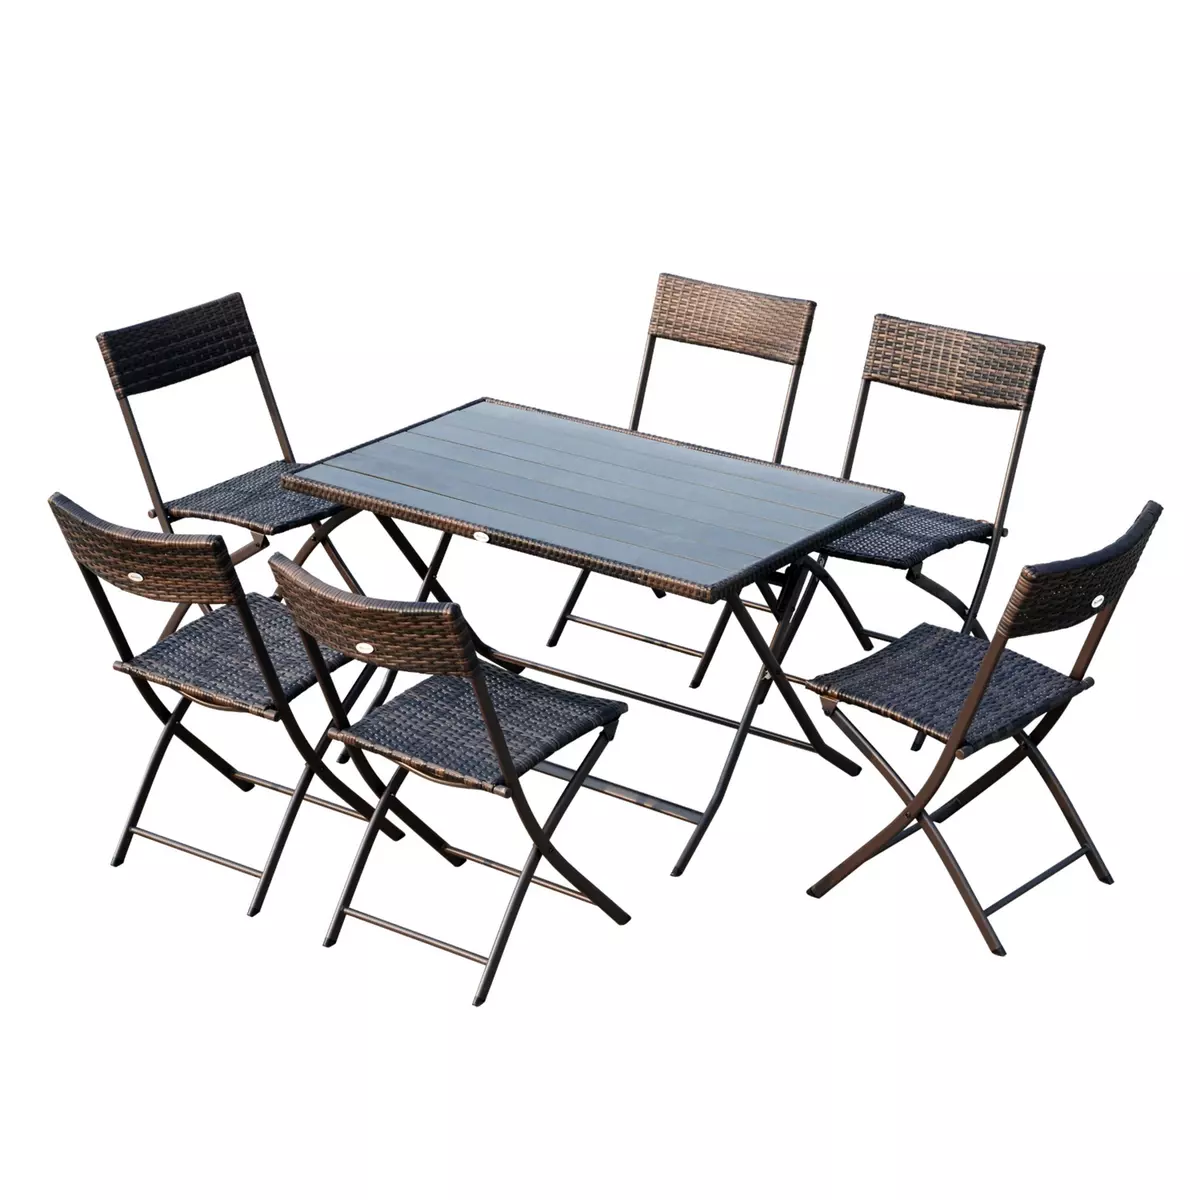 OUTSUNNY Ensemble salon de jardin 6 personnes grande table rectangulaire pliable + 6 chaises pliantes métal résine tressée PS chocolat